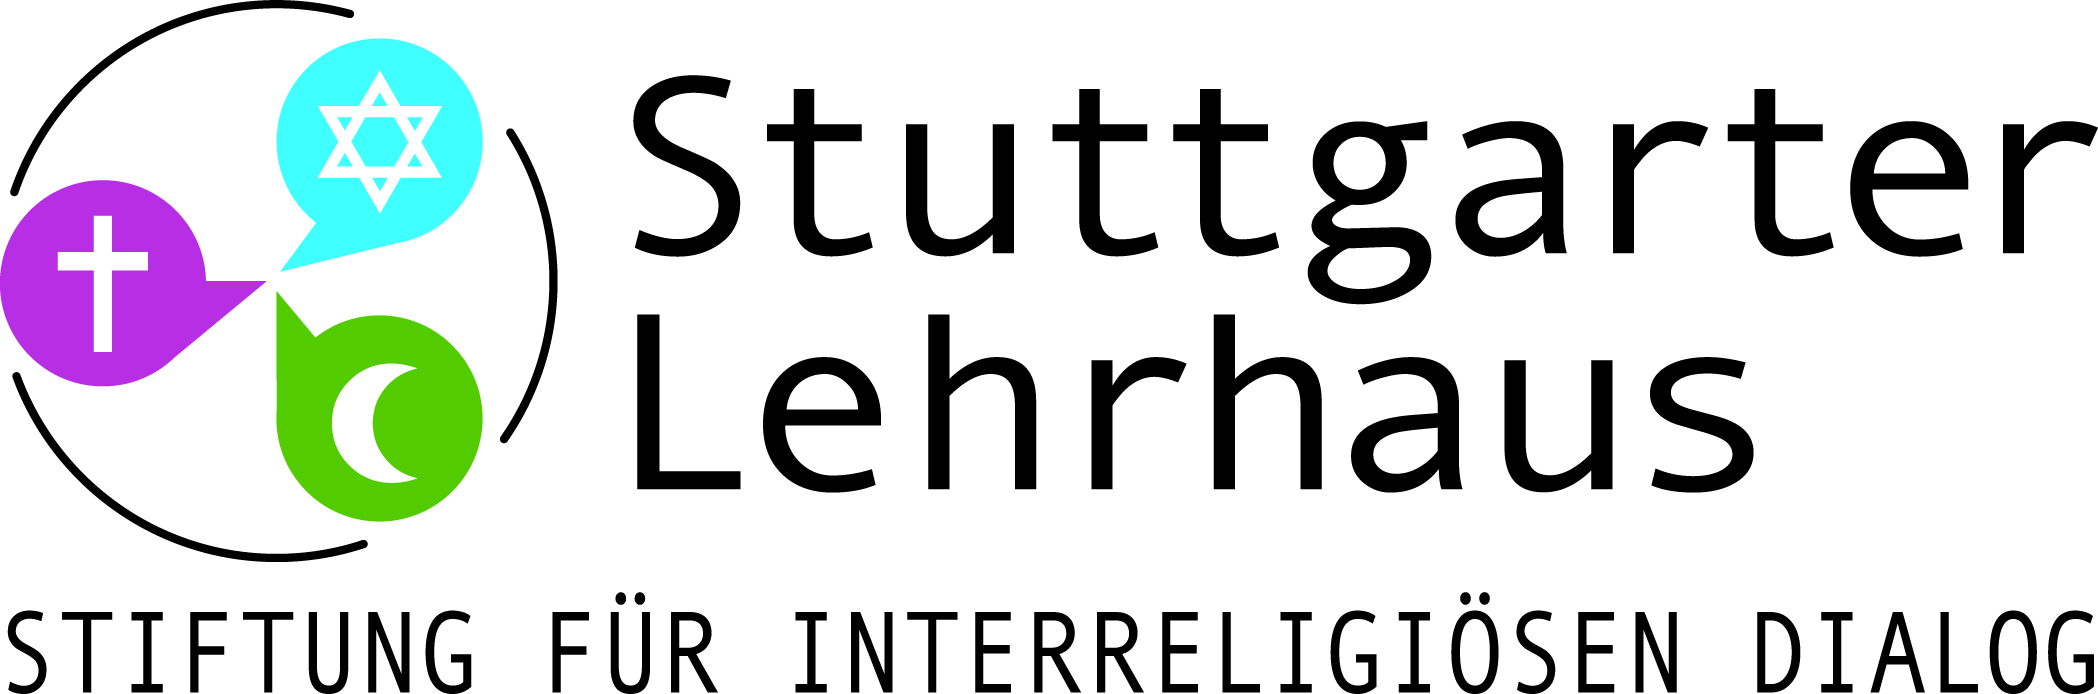 (c) Stuttgarter-lehrhaus.de